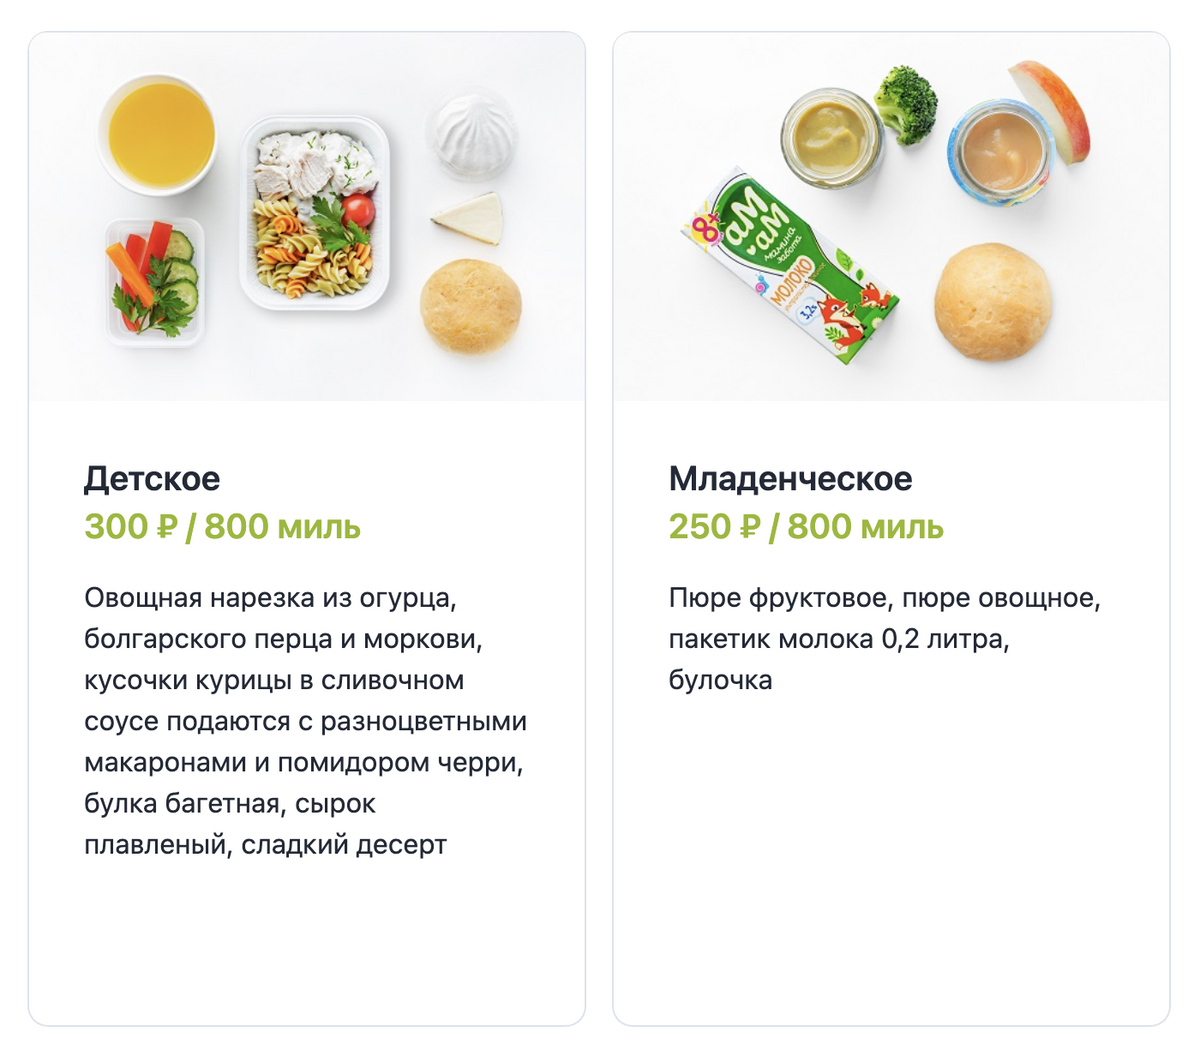 Так выглядит детское и младенческое питание на борту S7. Его можно оплатить рублями или&nbsp;милями. Источник: s7.ru